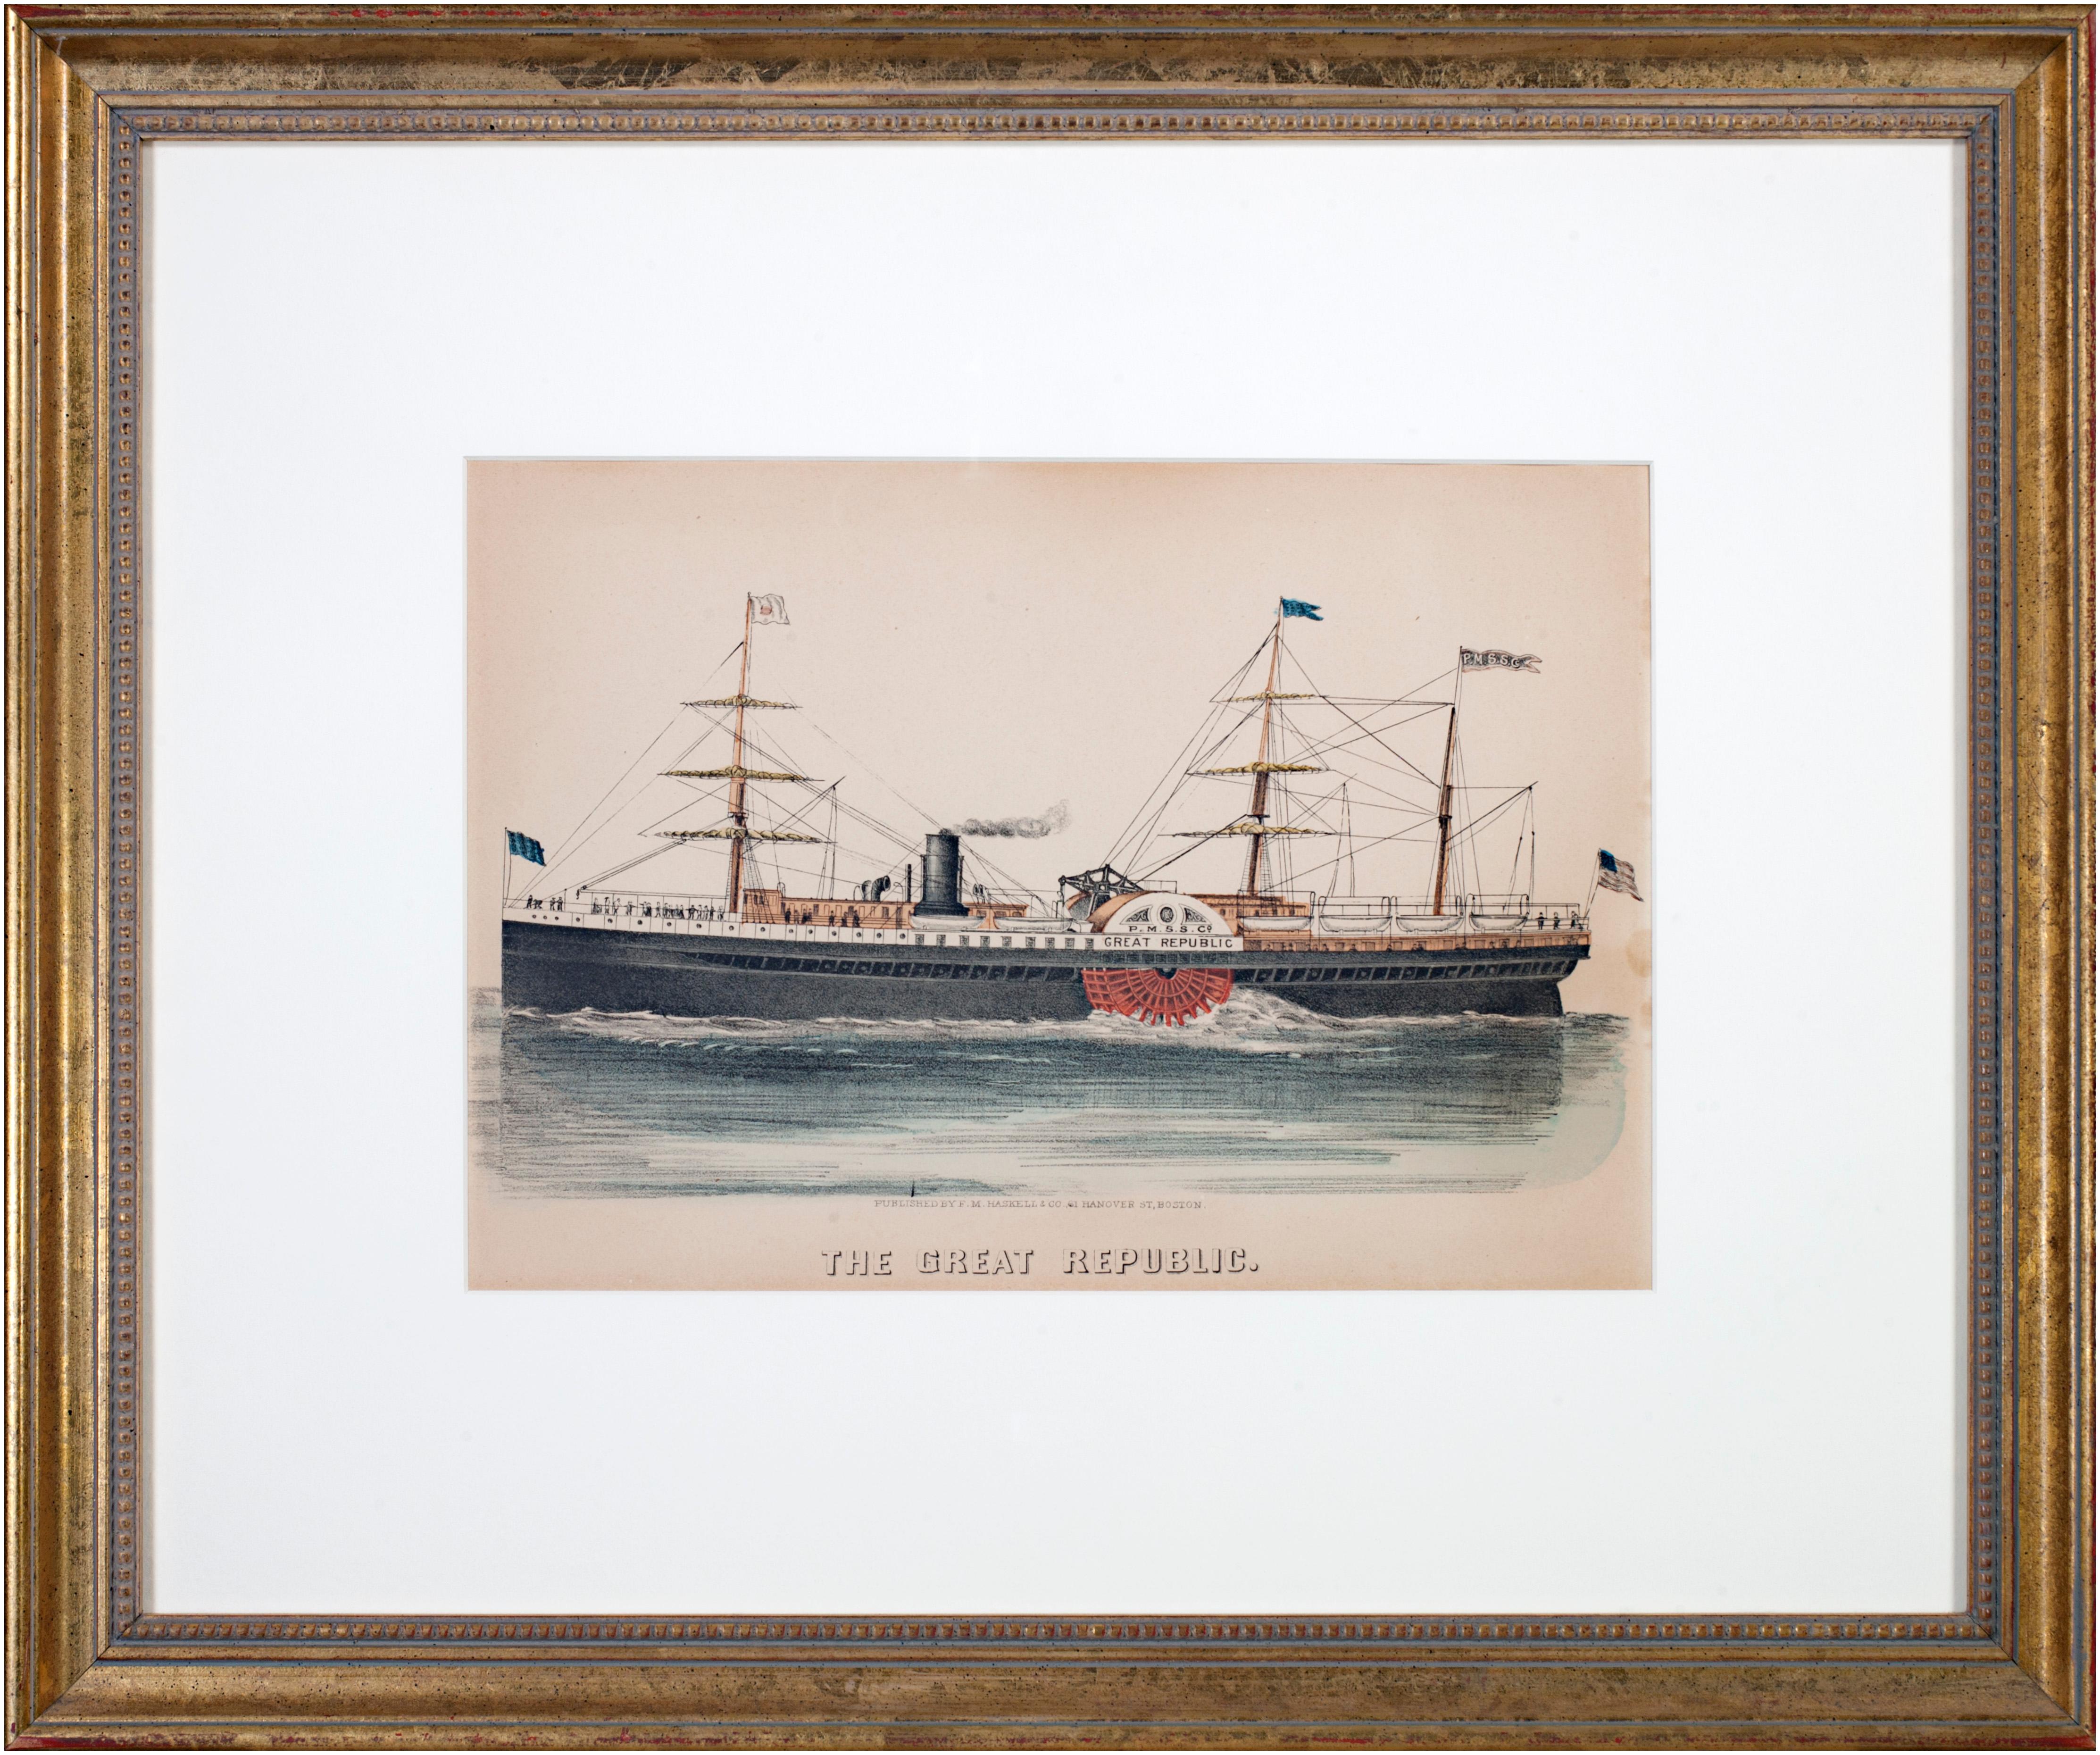 Print F.M. Haskell & Co. - The Great Republic" lithographie originale coloriée à la main d'un bateau à vapeur